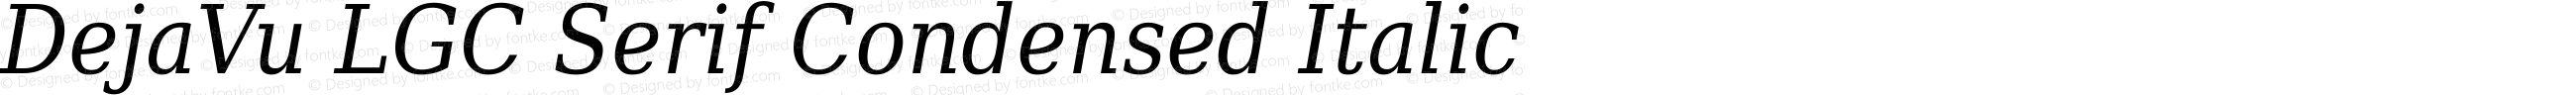 DejaVu LGC Serif Condensed Italic